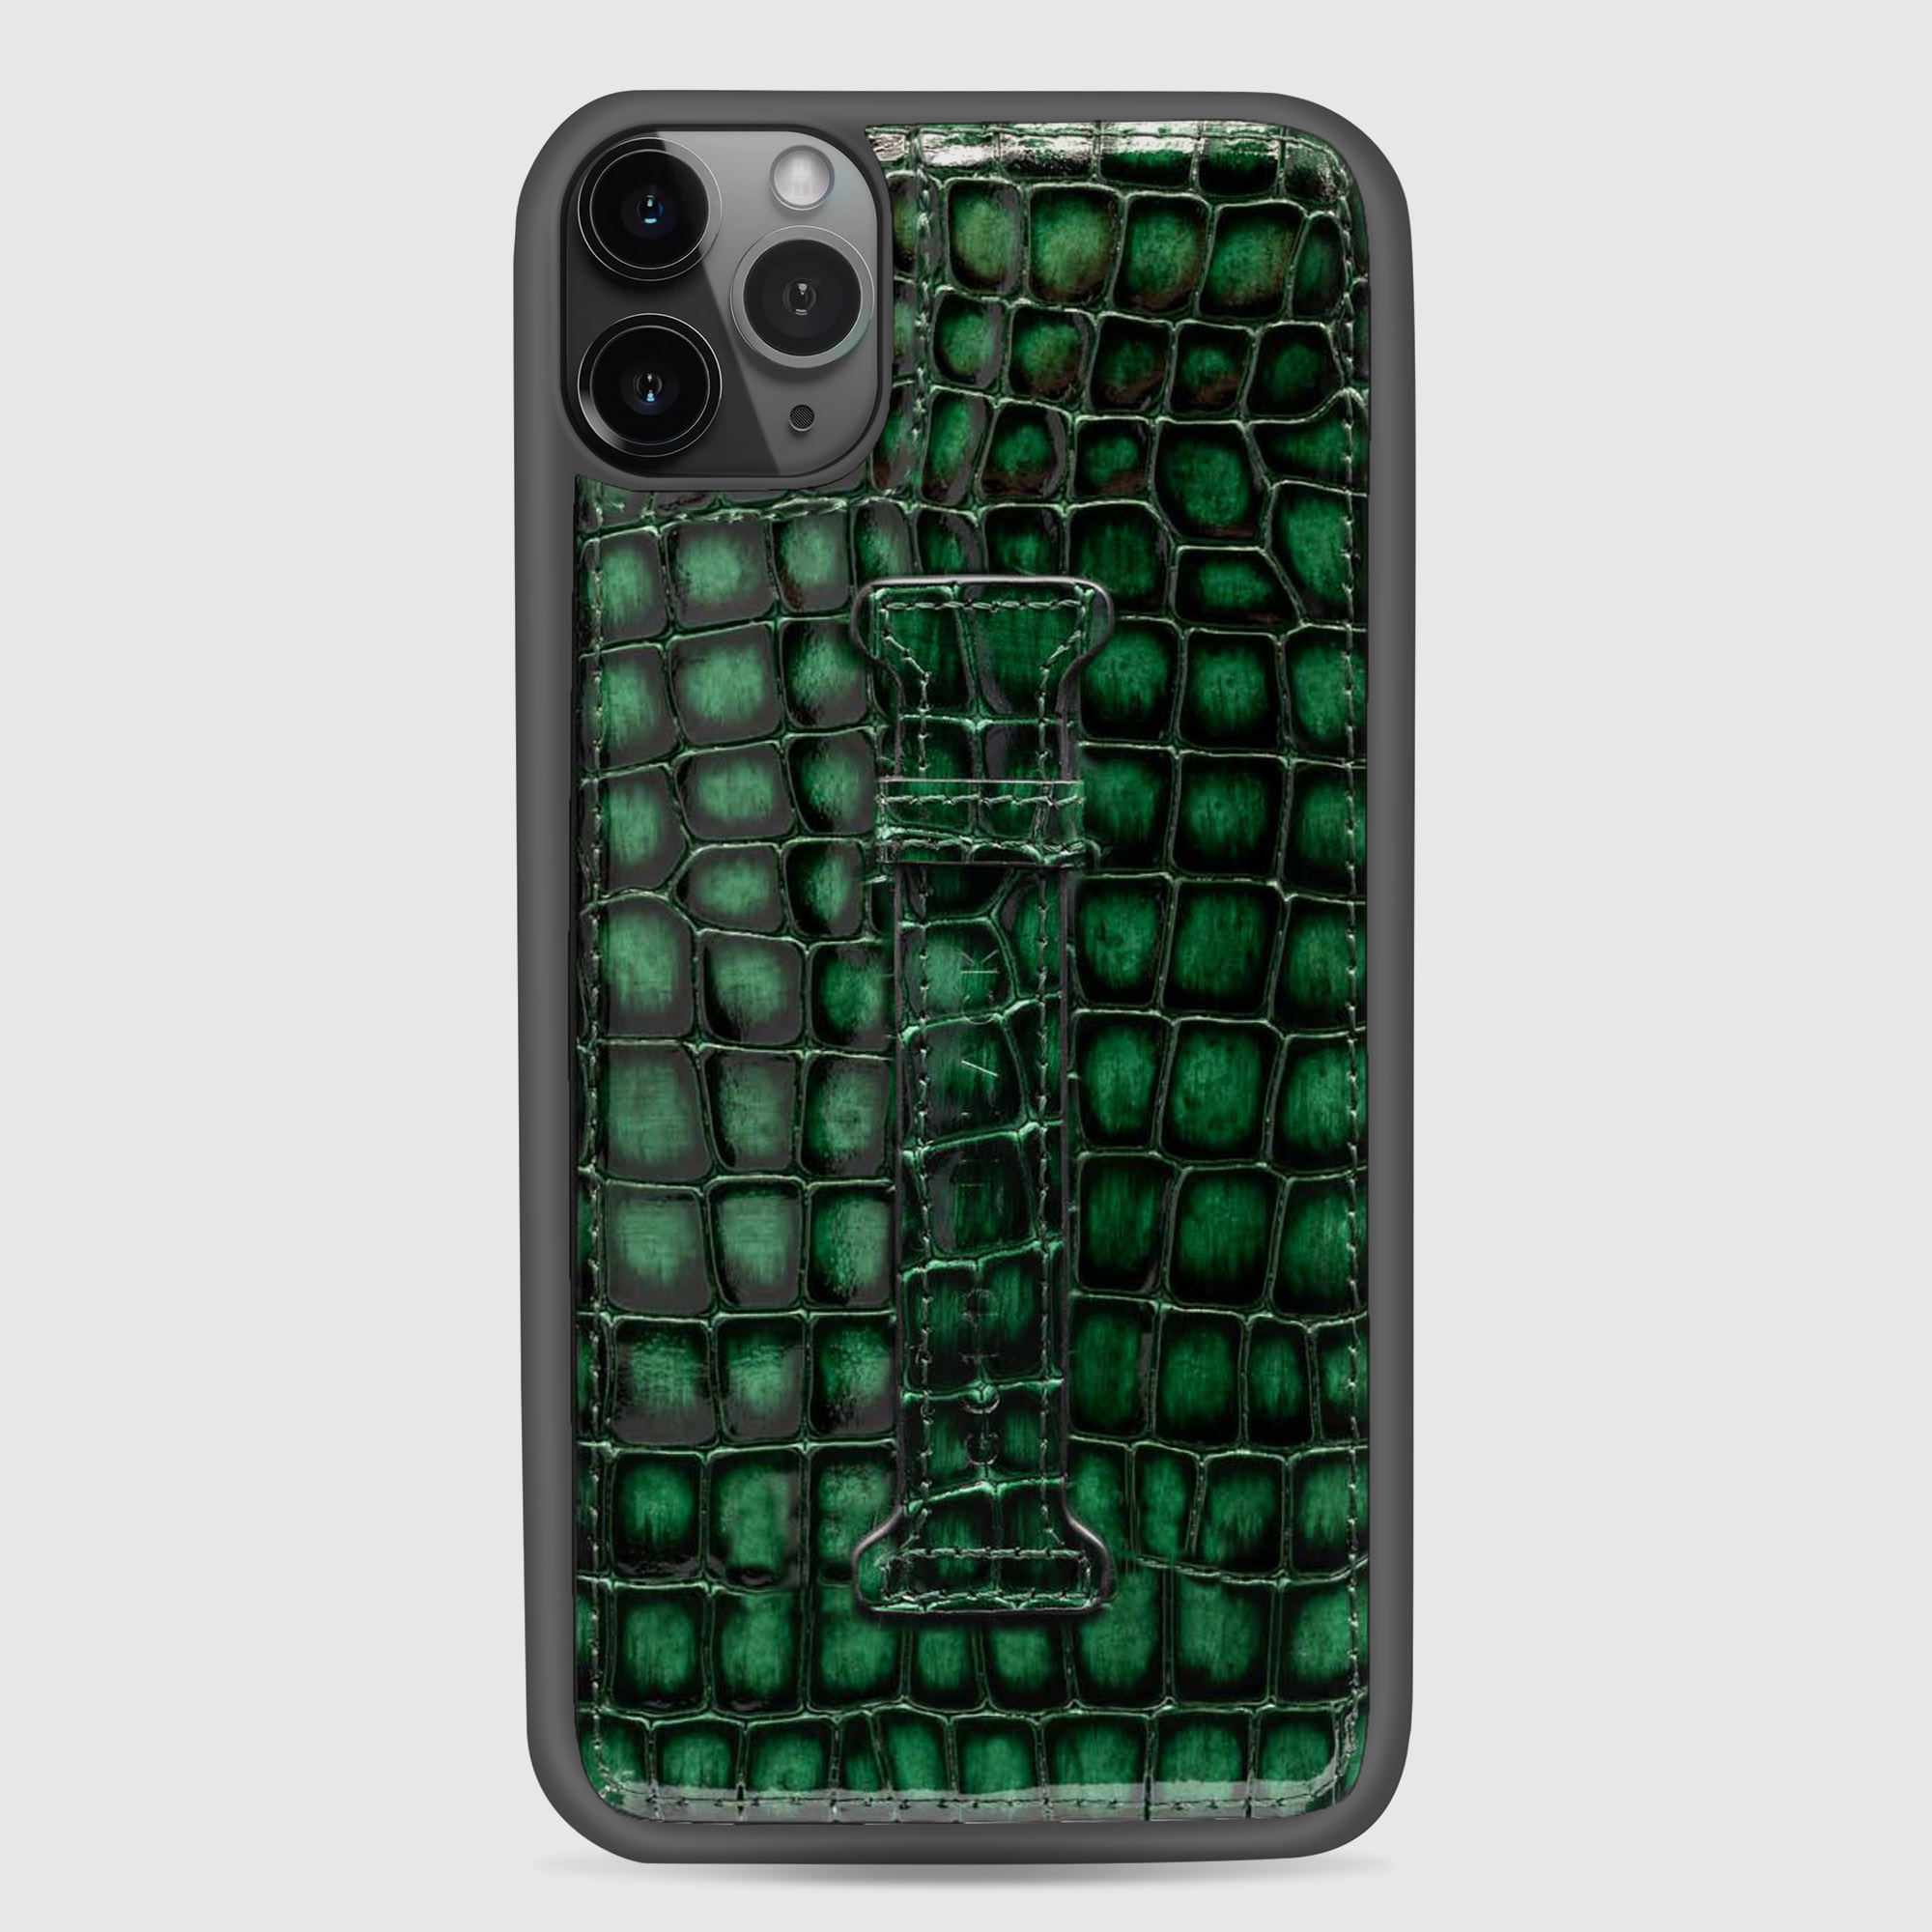 غطاء جوال ايفون 11 برو ماكس مع حامل الاصبع  (ميلانو) - اخضر